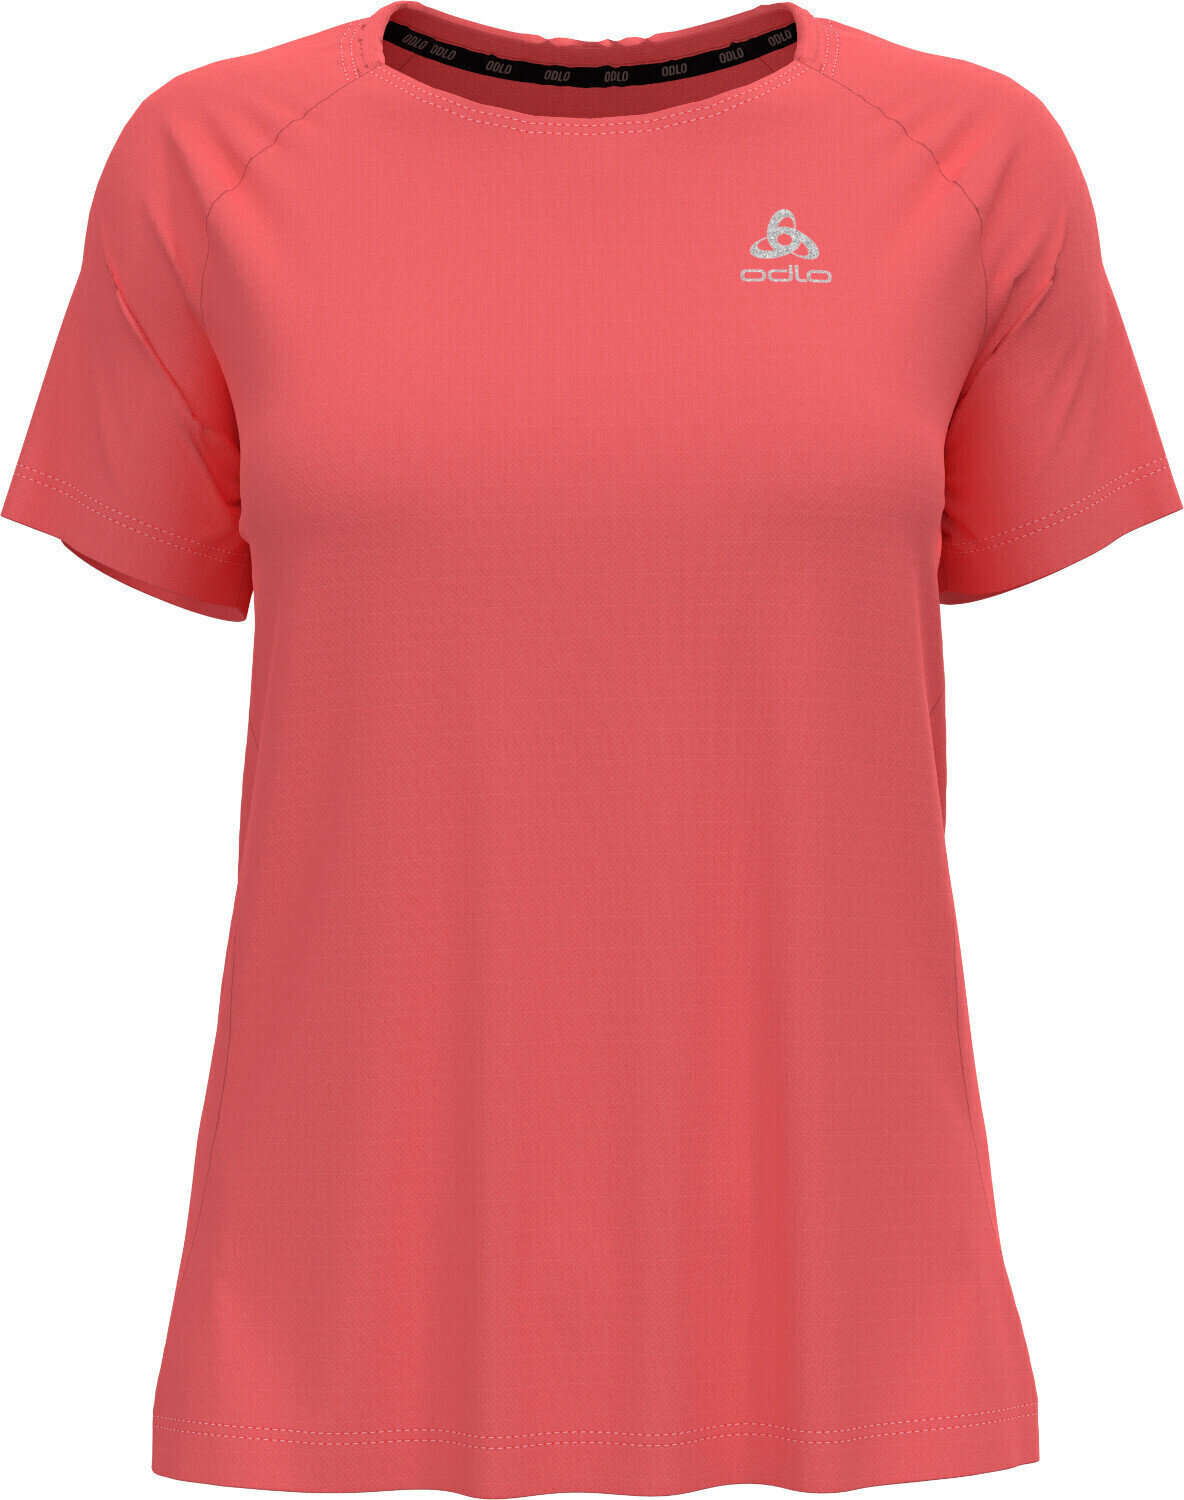 Chemise de course à manches courtes
 Odlo Essential T-Shirt Siesta S Chemise de course à manches courtes